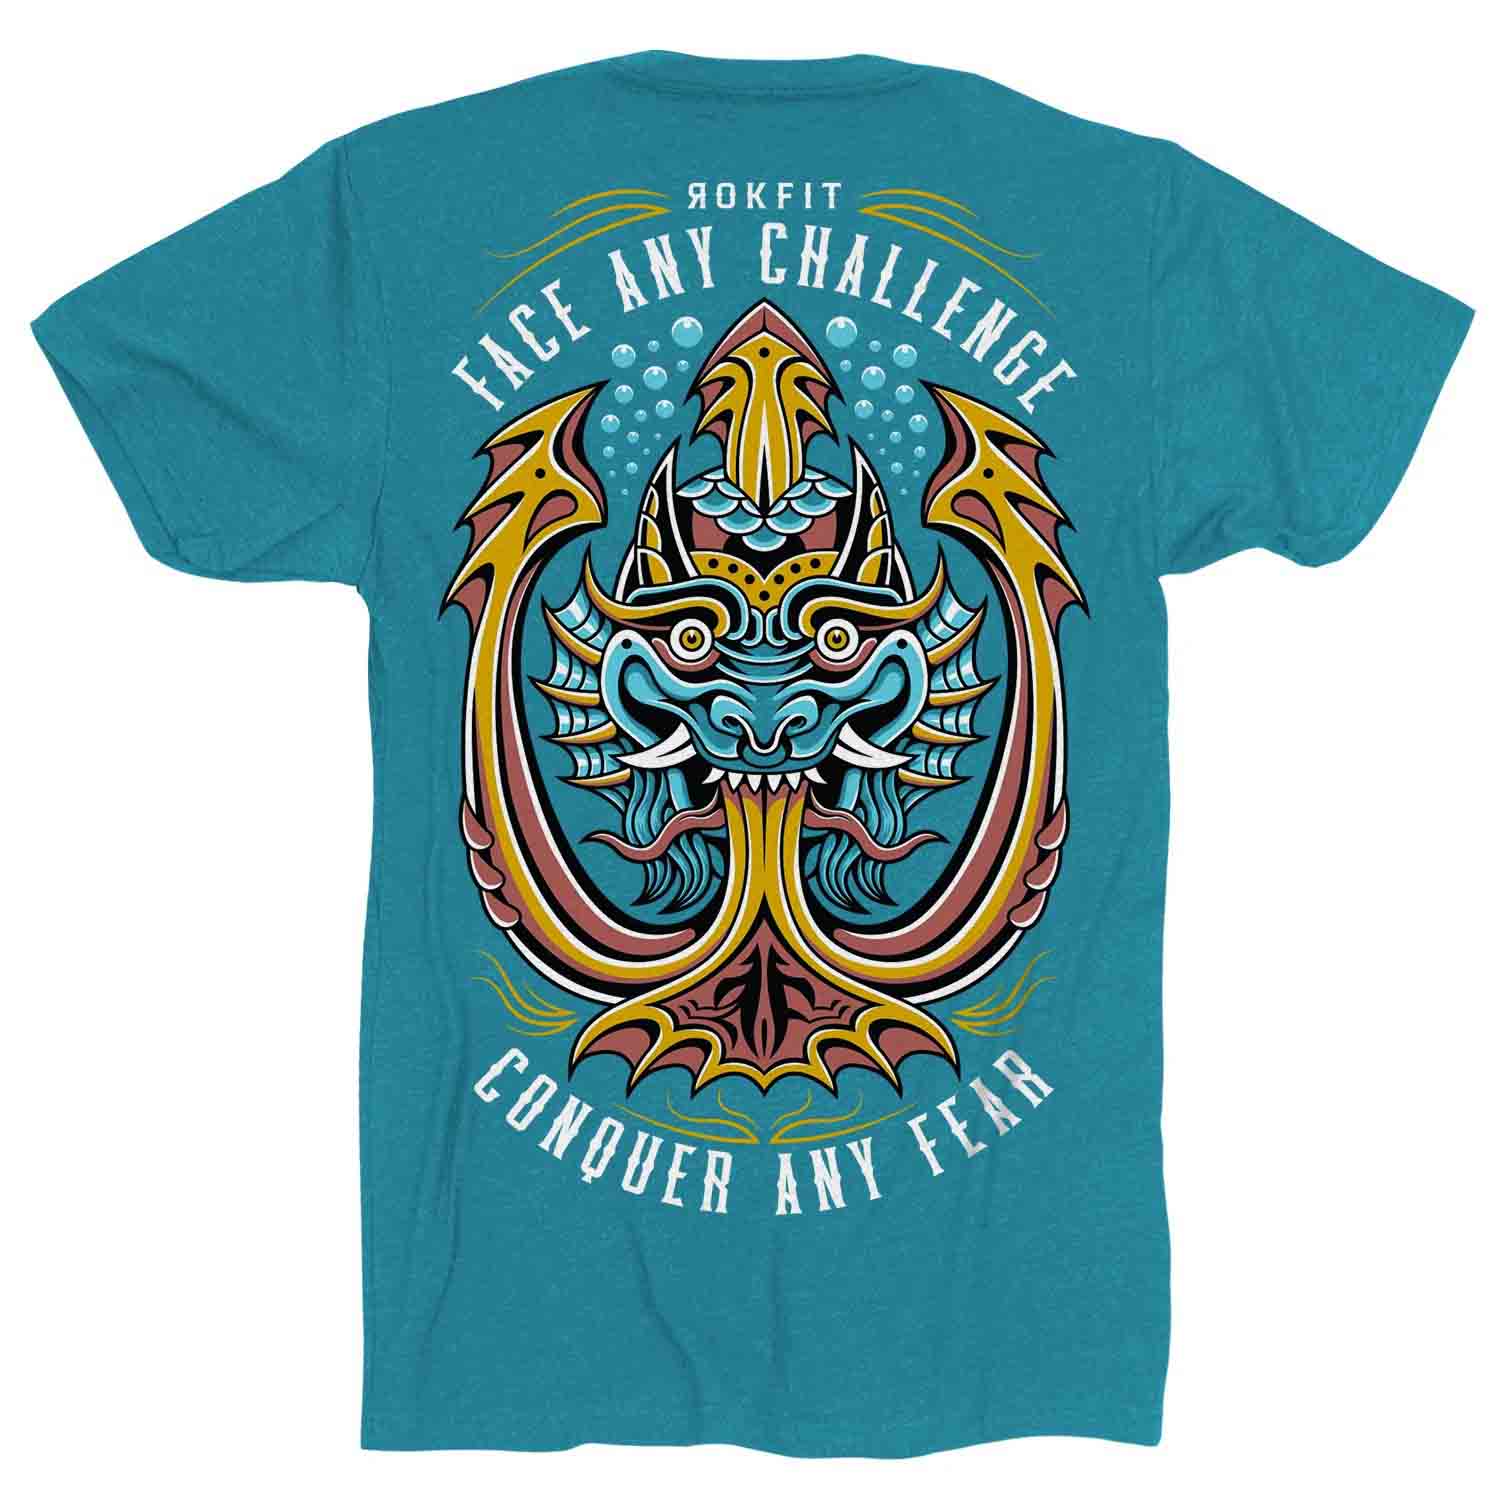 Stellen Sie sich jeder Herausforderung. T-Shirt